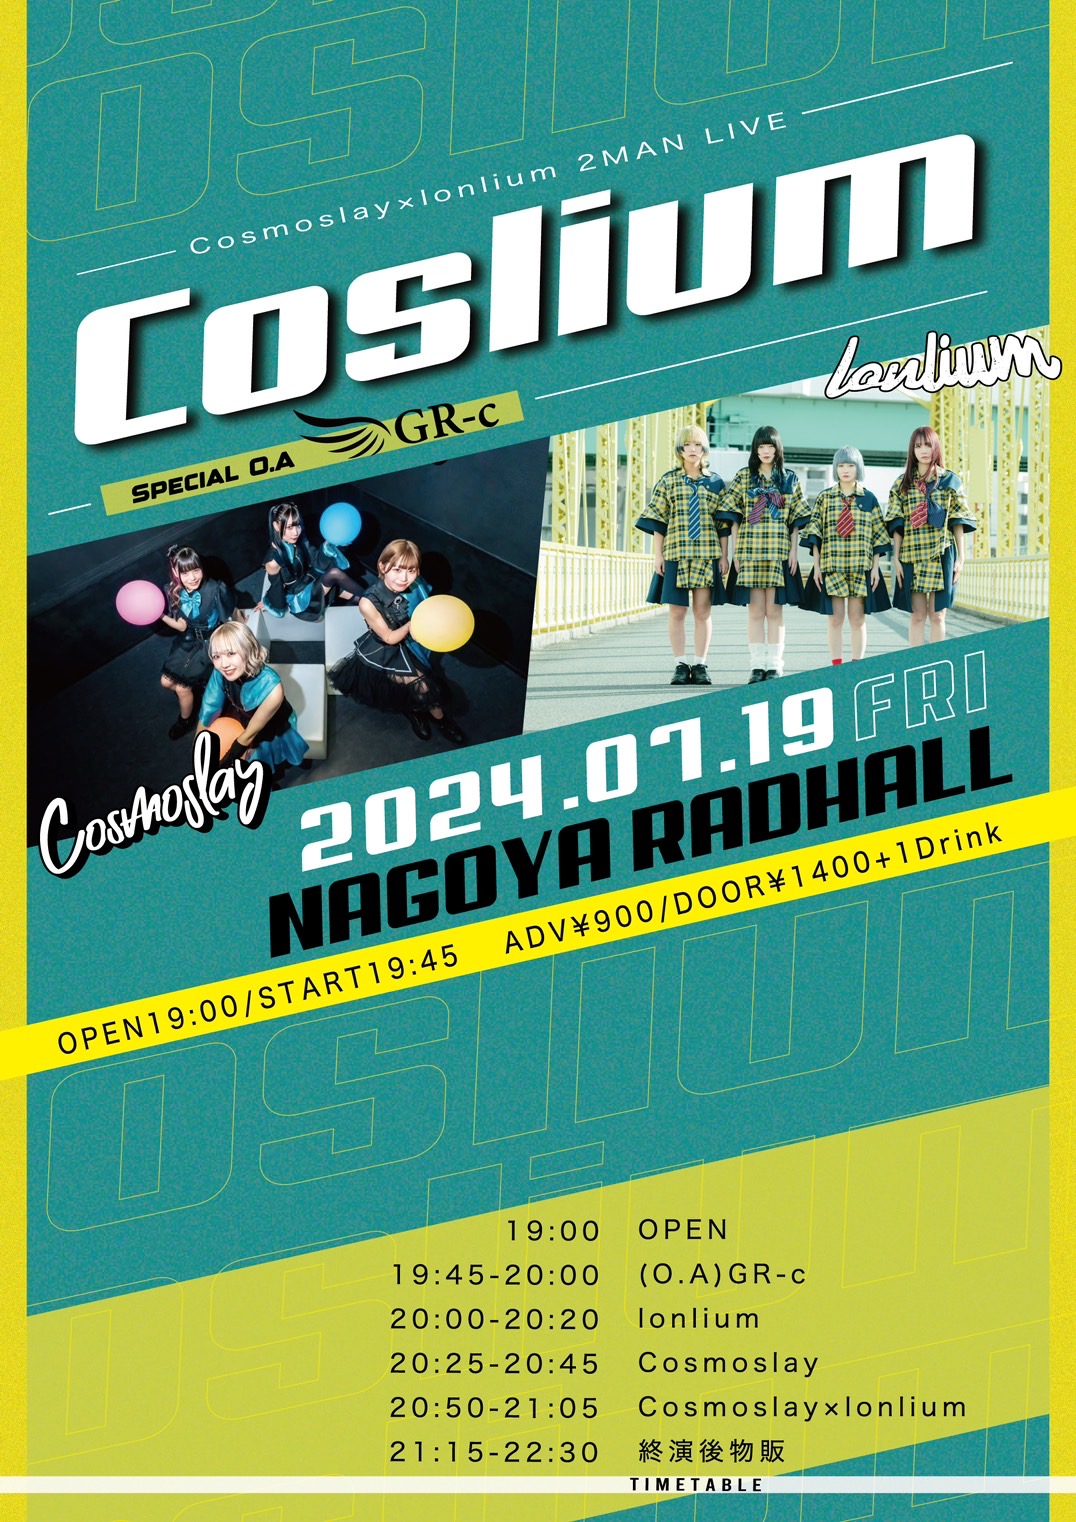 Cosmoslay×lonlium 2MAN LIVE 「Coslium」